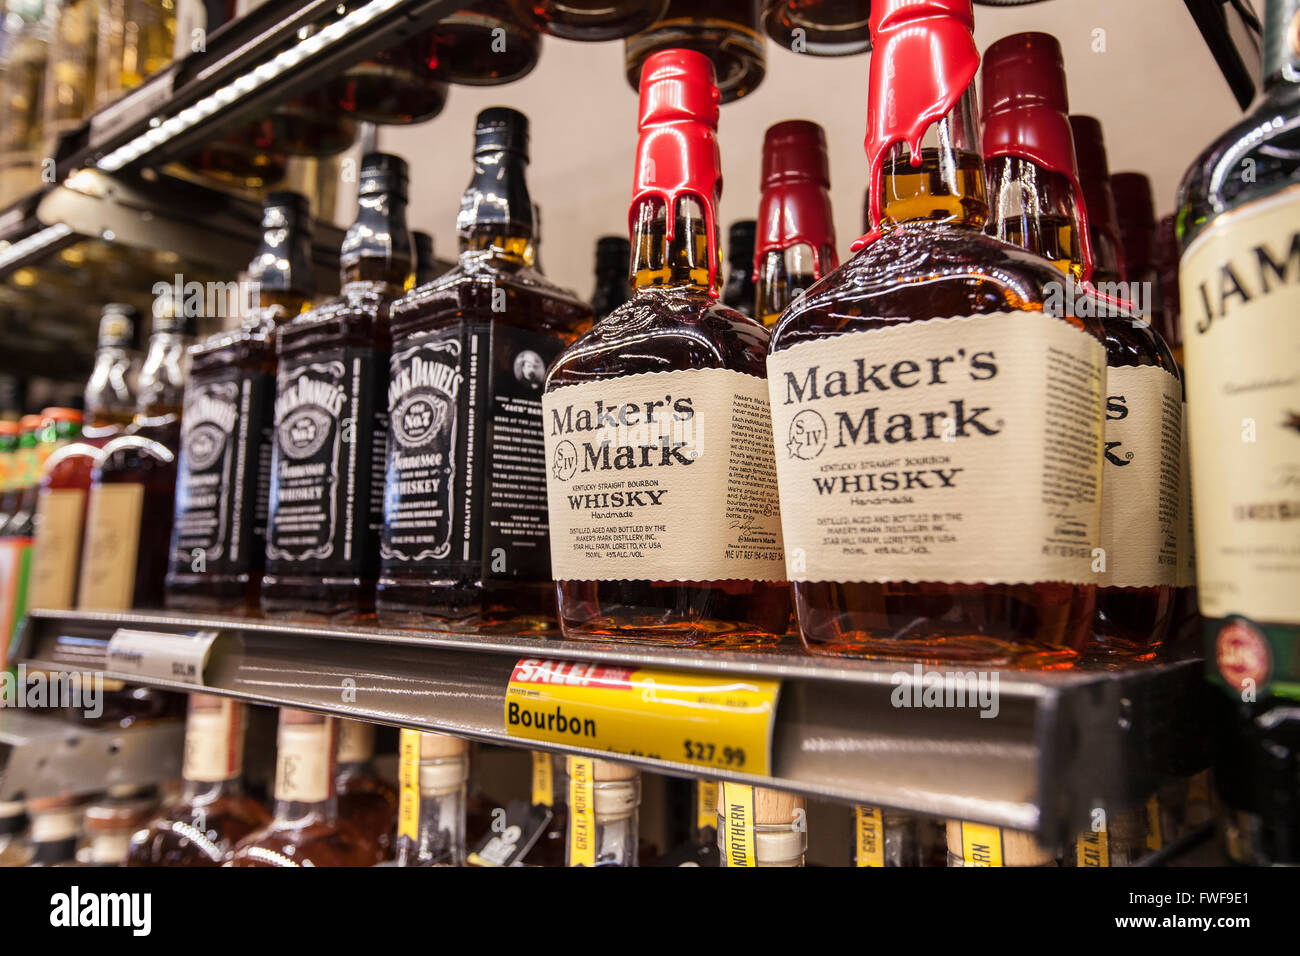 Bouteilles de whisky bourbon Maker's Mark sur une étagère dans un magasin Banque D'Images